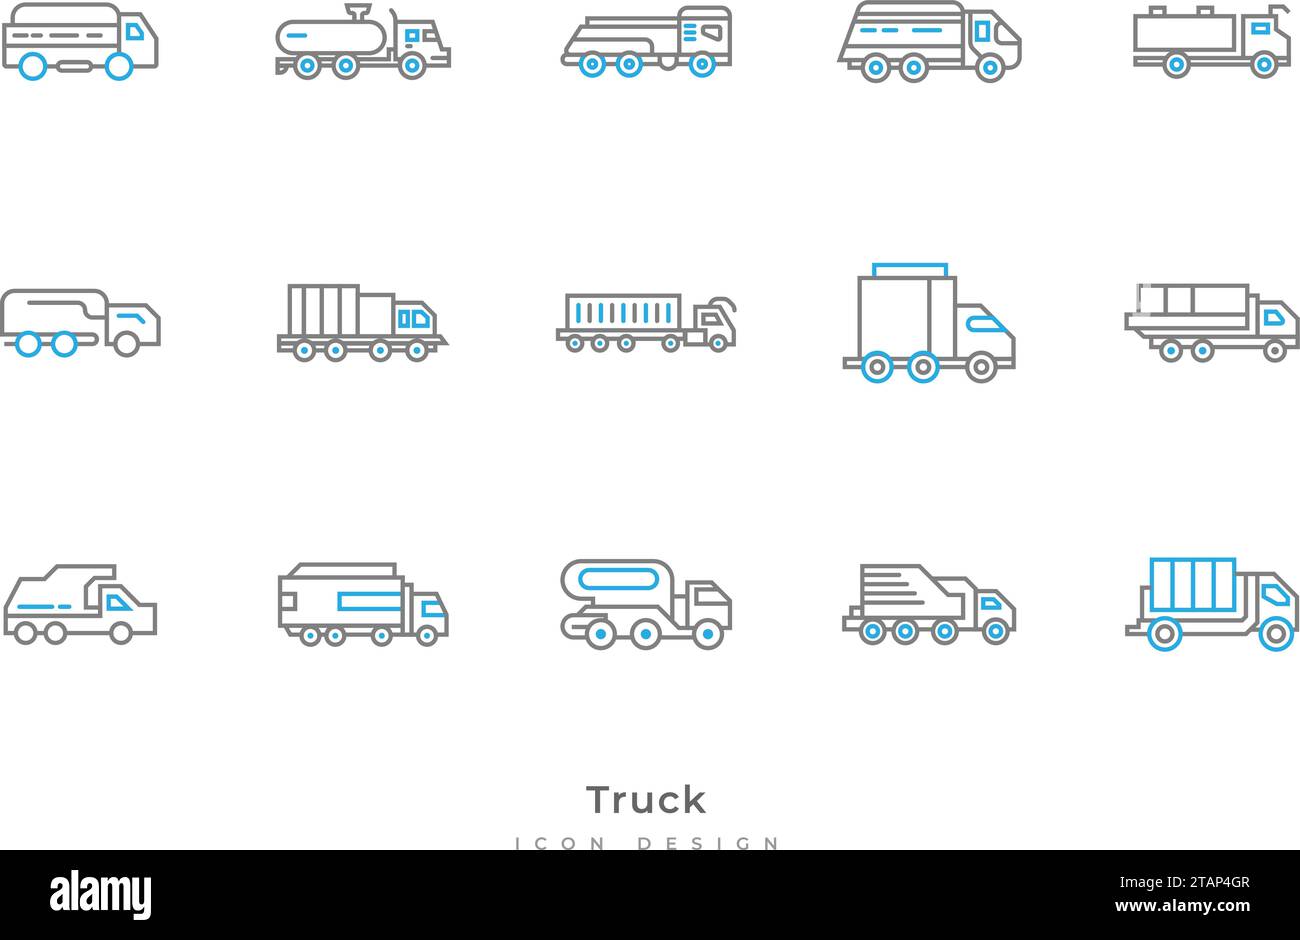 Lkw-Symbolsatz mit verschiedenen Formen in Linienform. Enthält Tankwagen, Transporter, Anhänger und mehr Stock Vektor